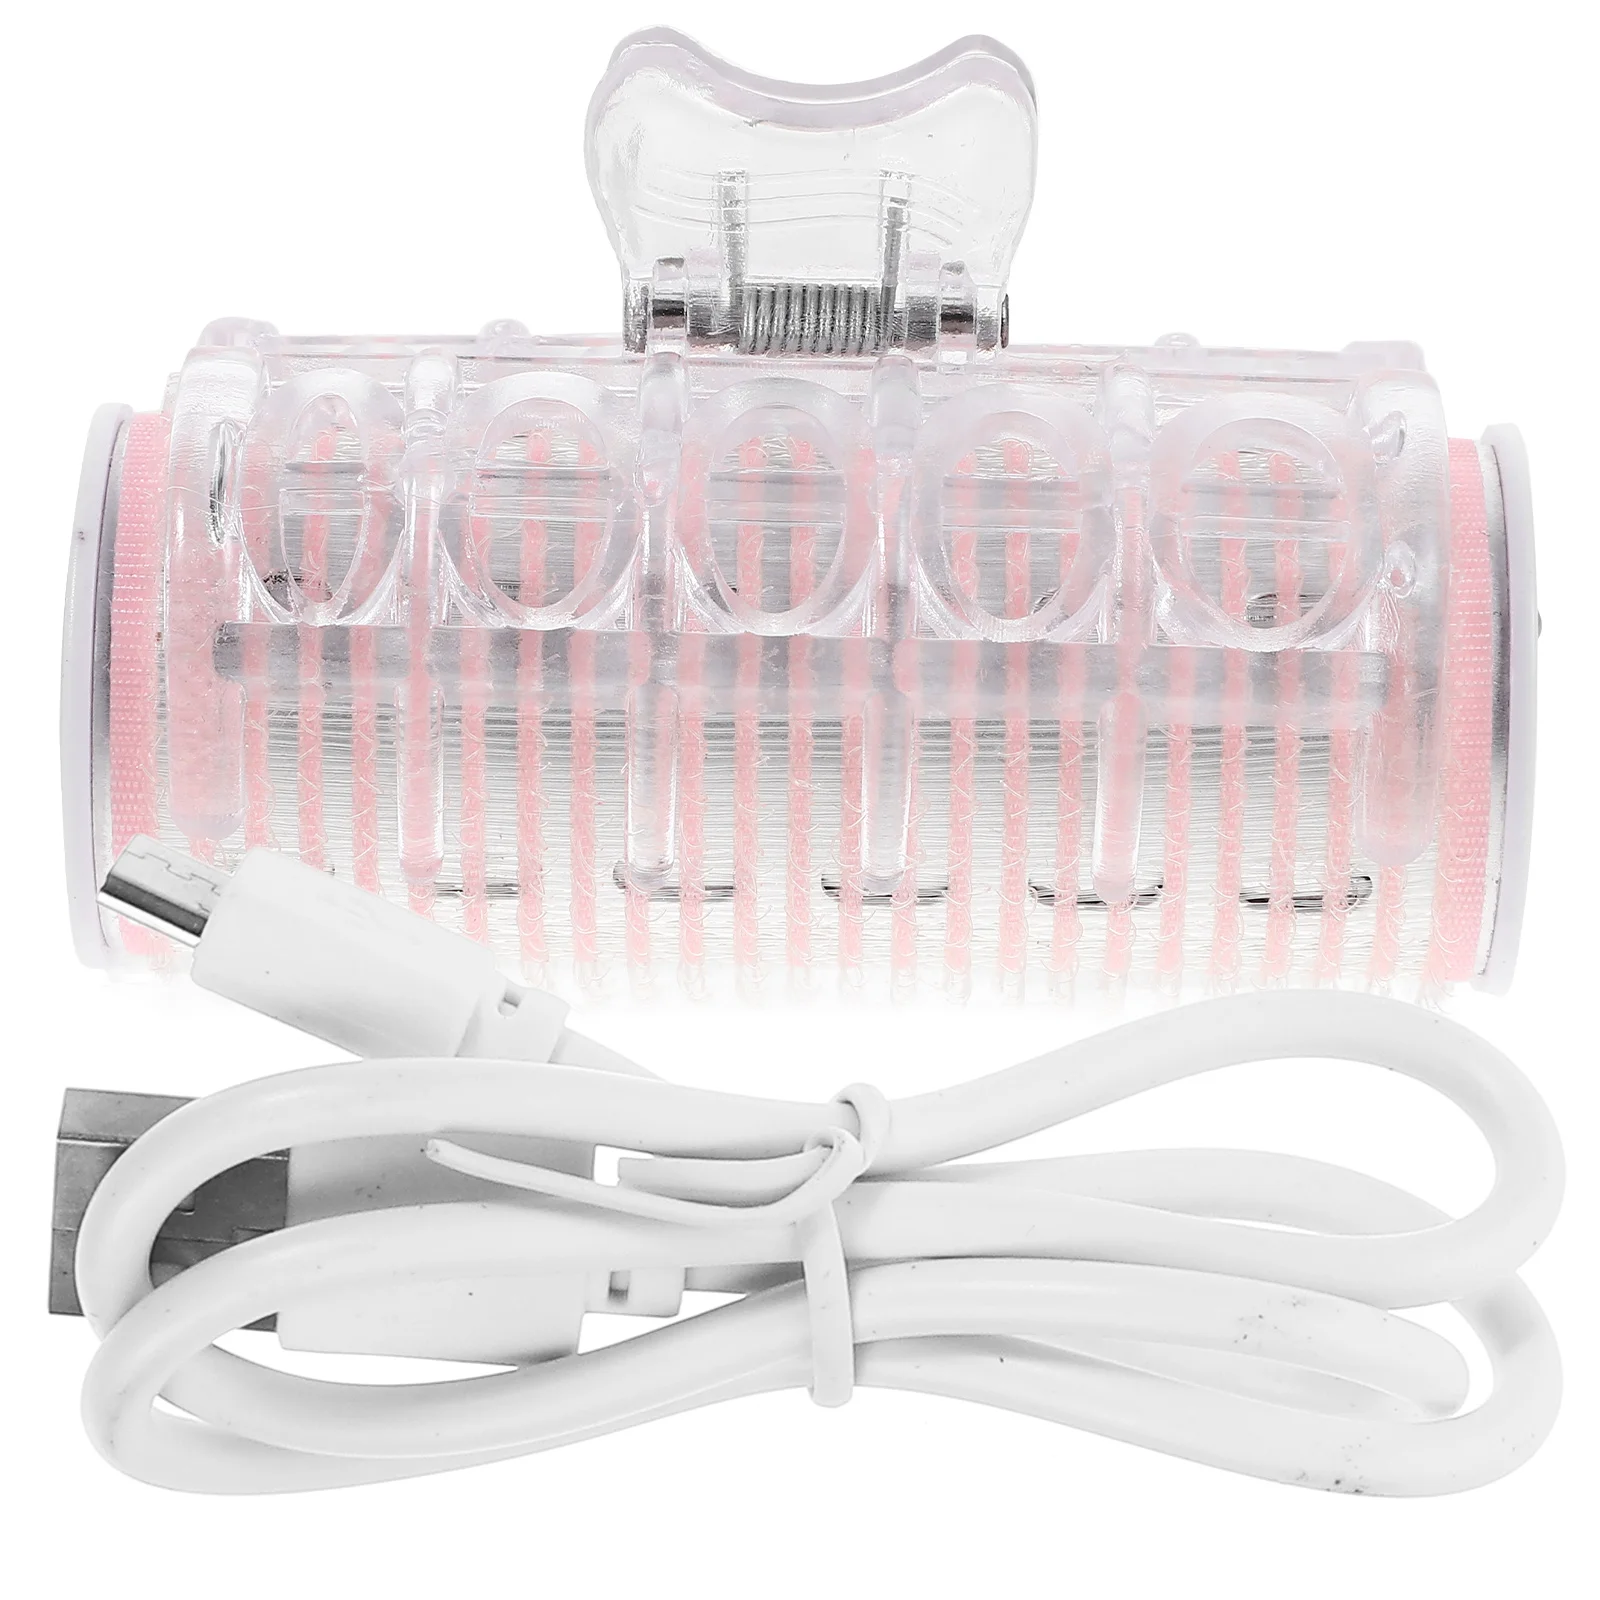 

Щипцы для завивки волос с USB-зарядкой, ролик для укладки волос Bang, автоматические бигуди с подогревом, парикмахерские инструменты для женщин (розовый)